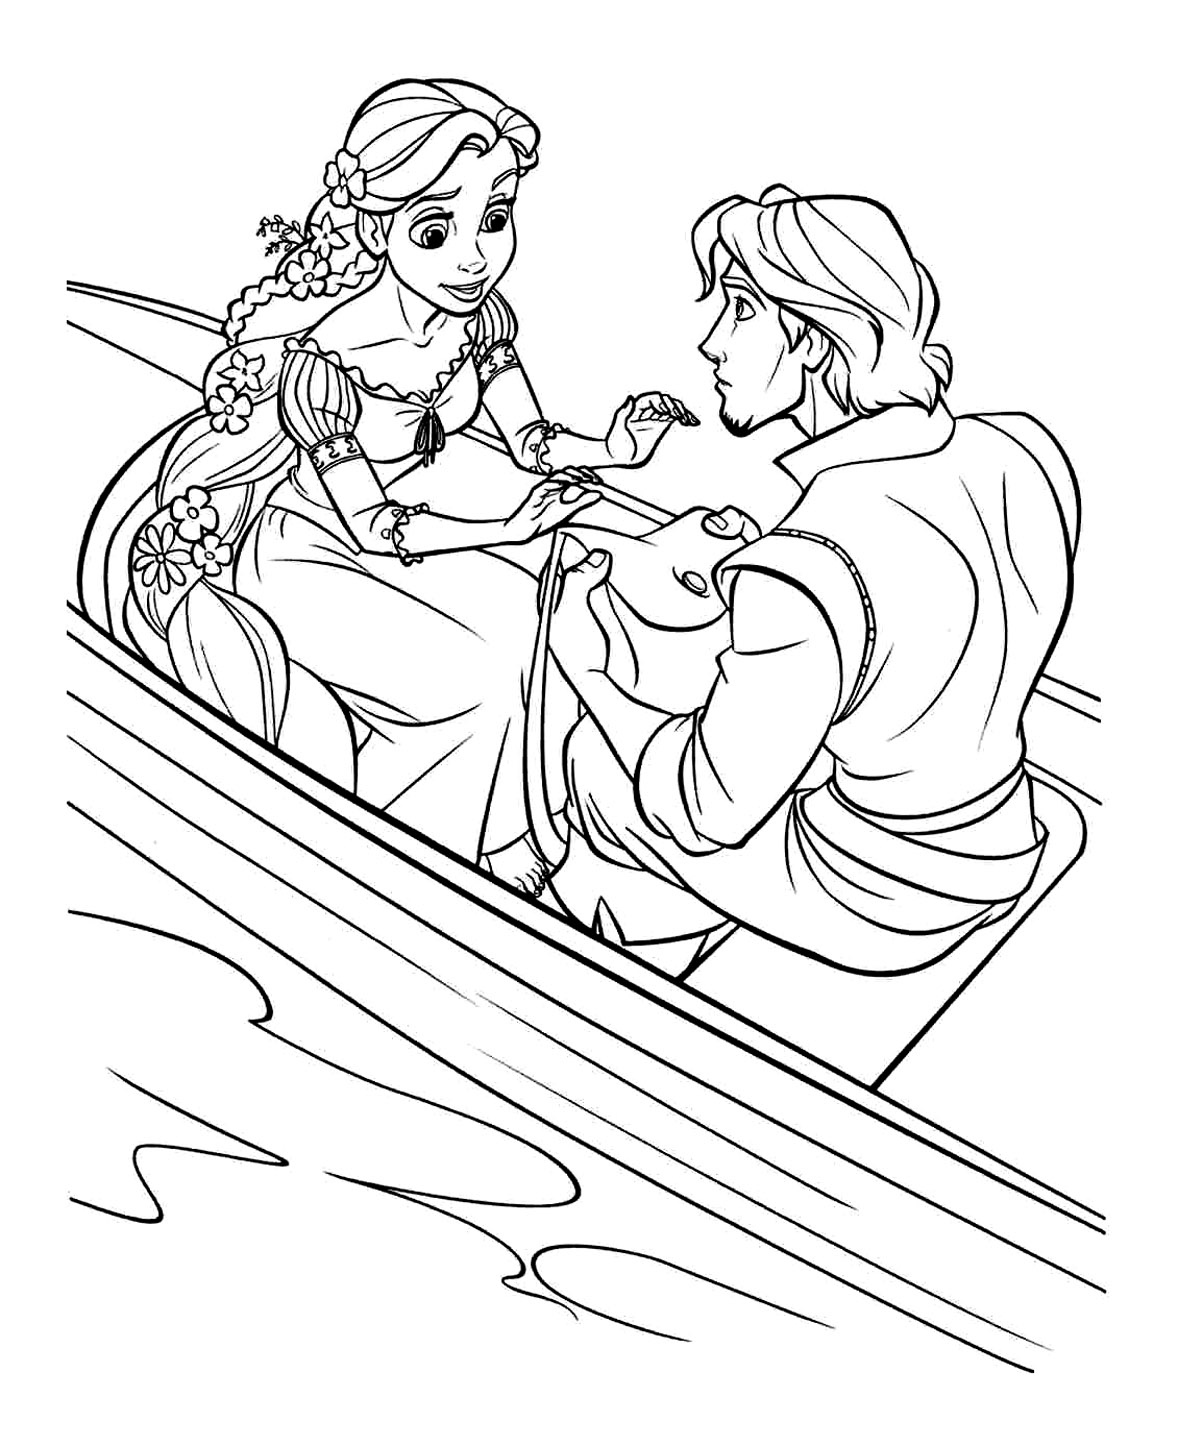 Image à imprimer de Raiponce et Flynn dans un bateau